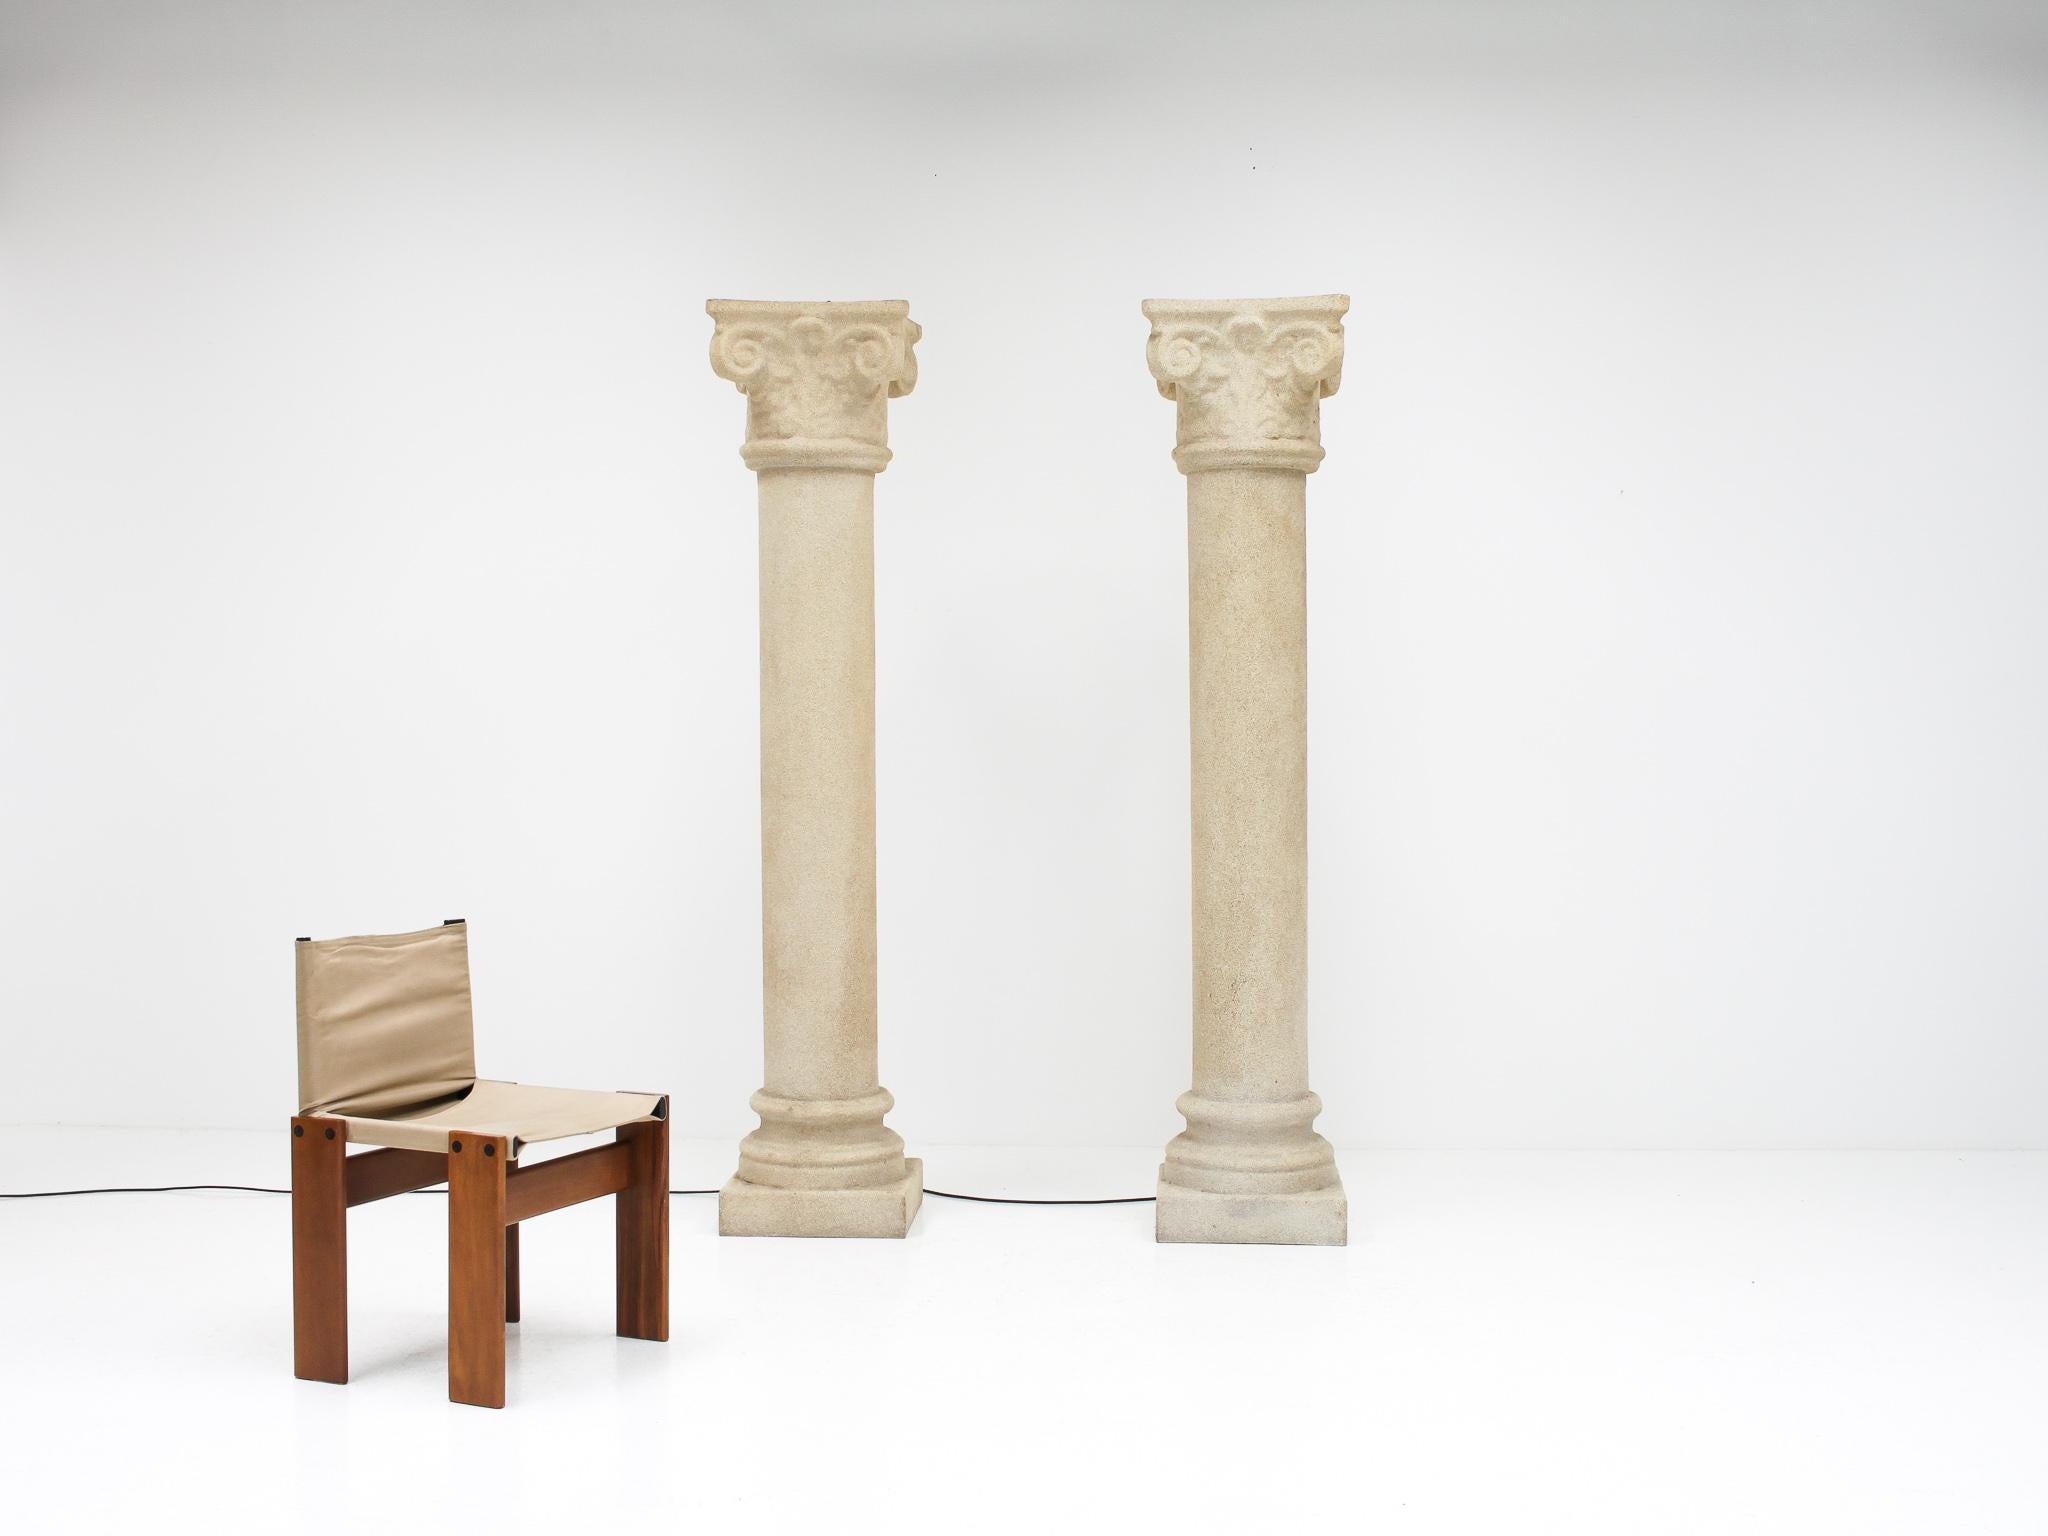 Ein sehr schwer zu findendes, sehr sammelwürdiges und beeindruckendes Paar Säulenlampen des französischen Designers André Cazenave für Singleton, Italien, 1970er Jahre.

Die aus Glasfaser und gemahlenem Marmormehl hergestellten Strukturen strahlen